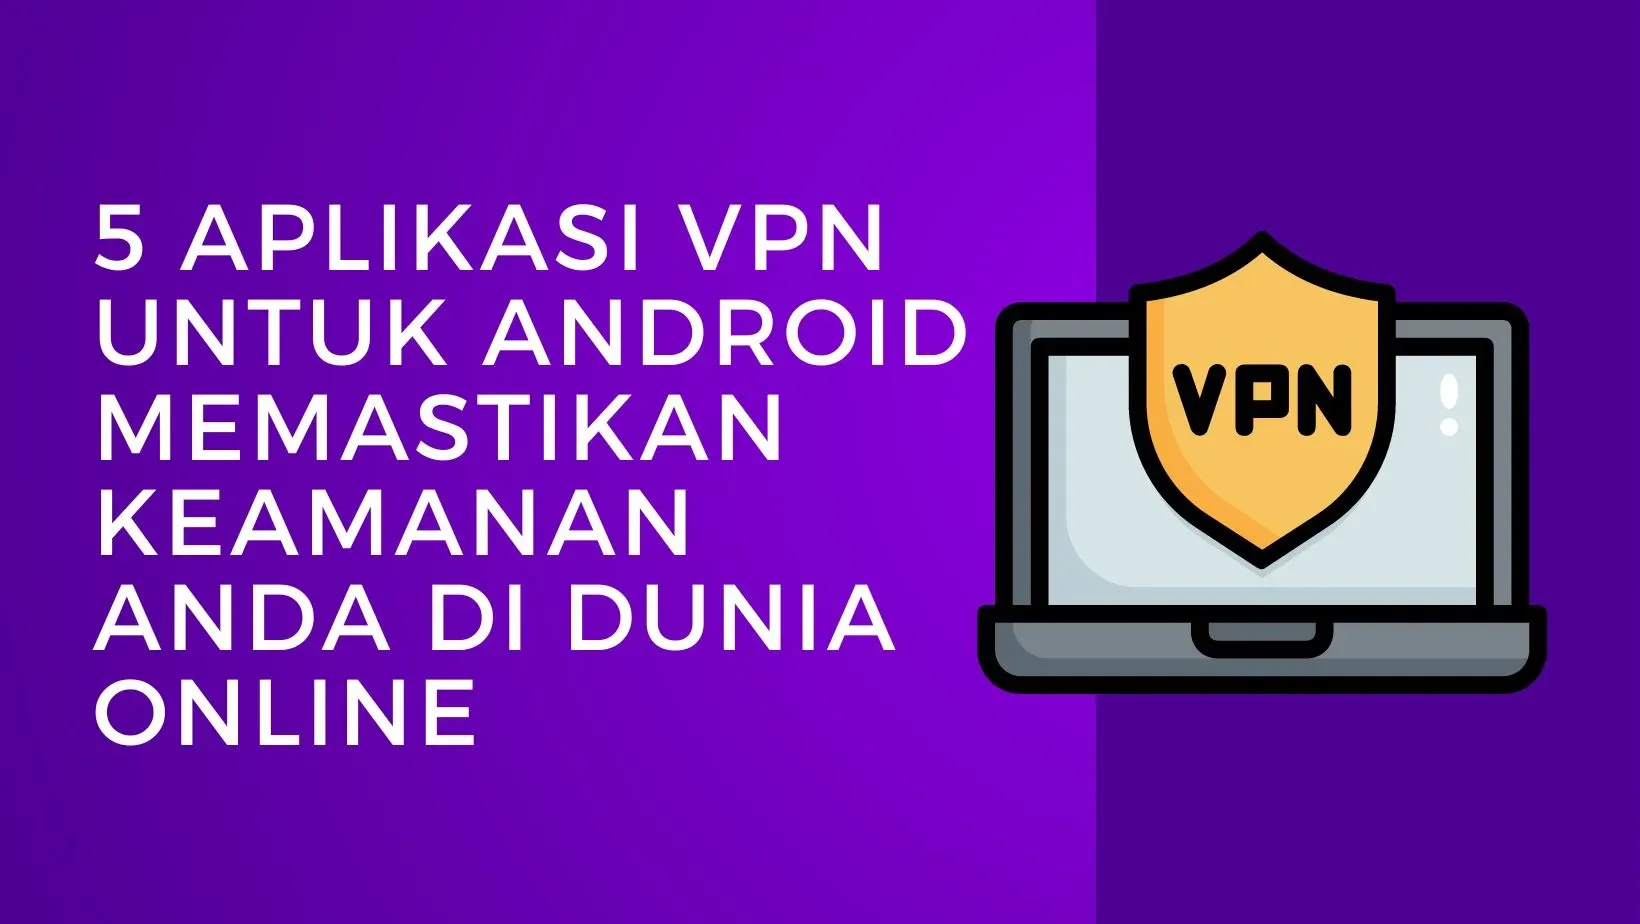 5 Aplikasi VPN untuk Android Memastikan Keamanan Anda di Dunia Online